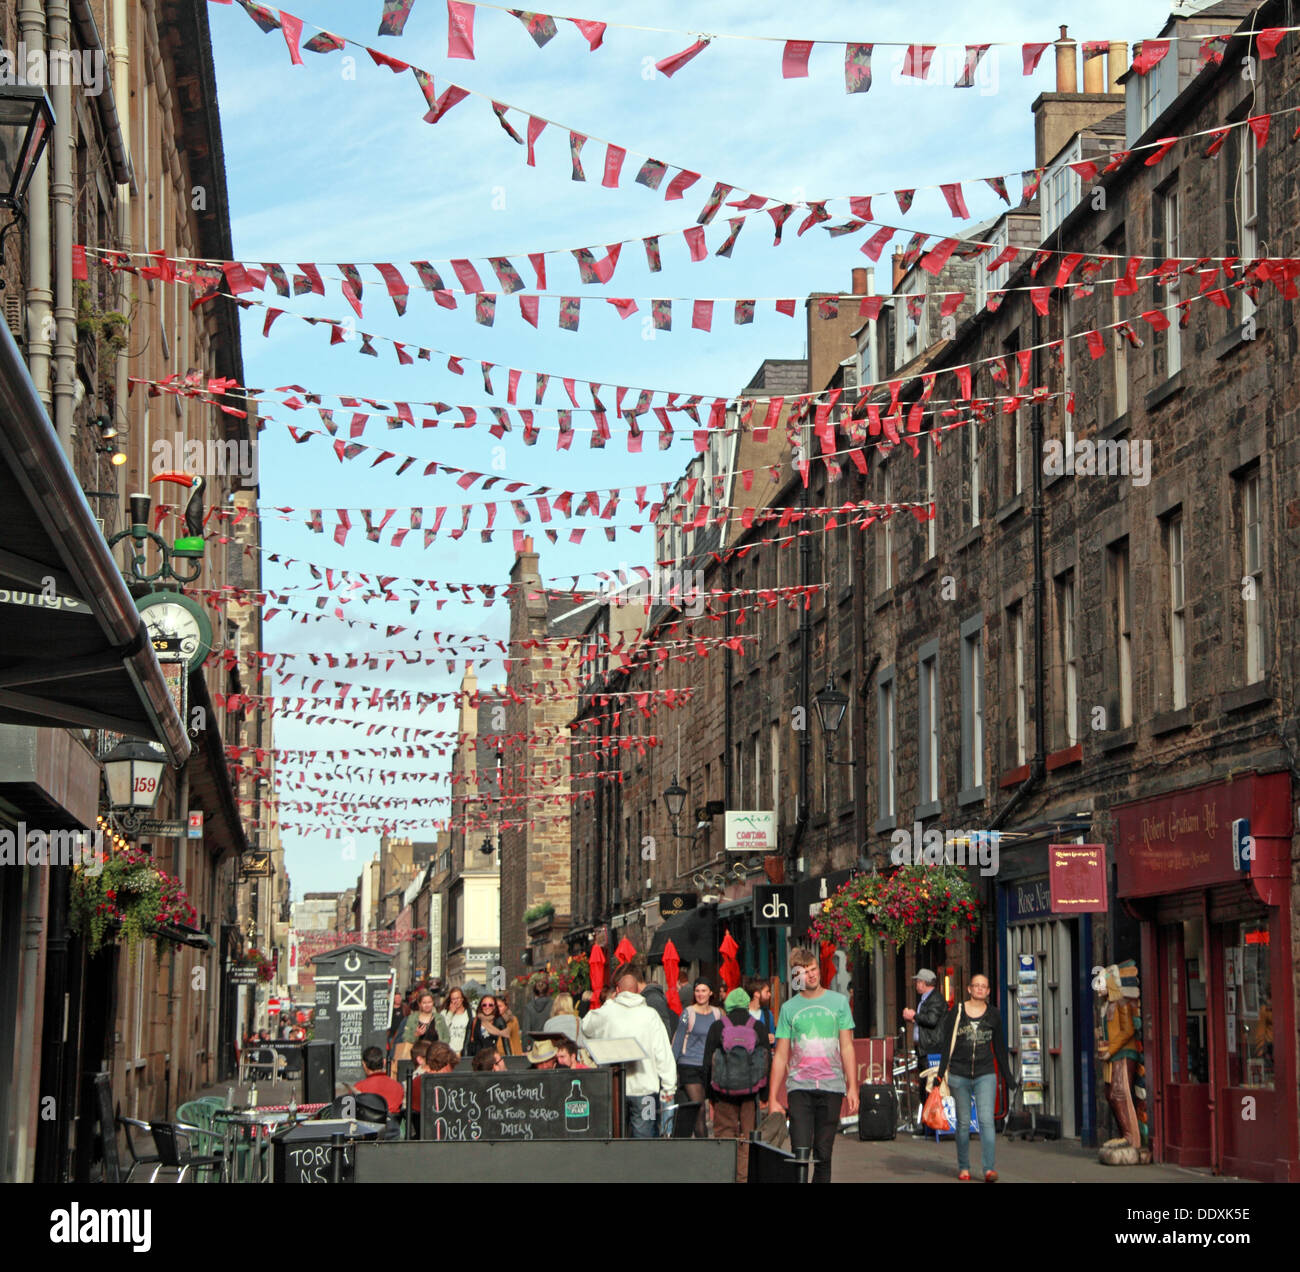 Rose Street, Edinburgh, Ecosse, Royaume-Uni un endroit pour boire,manger,partie Banque D'Images